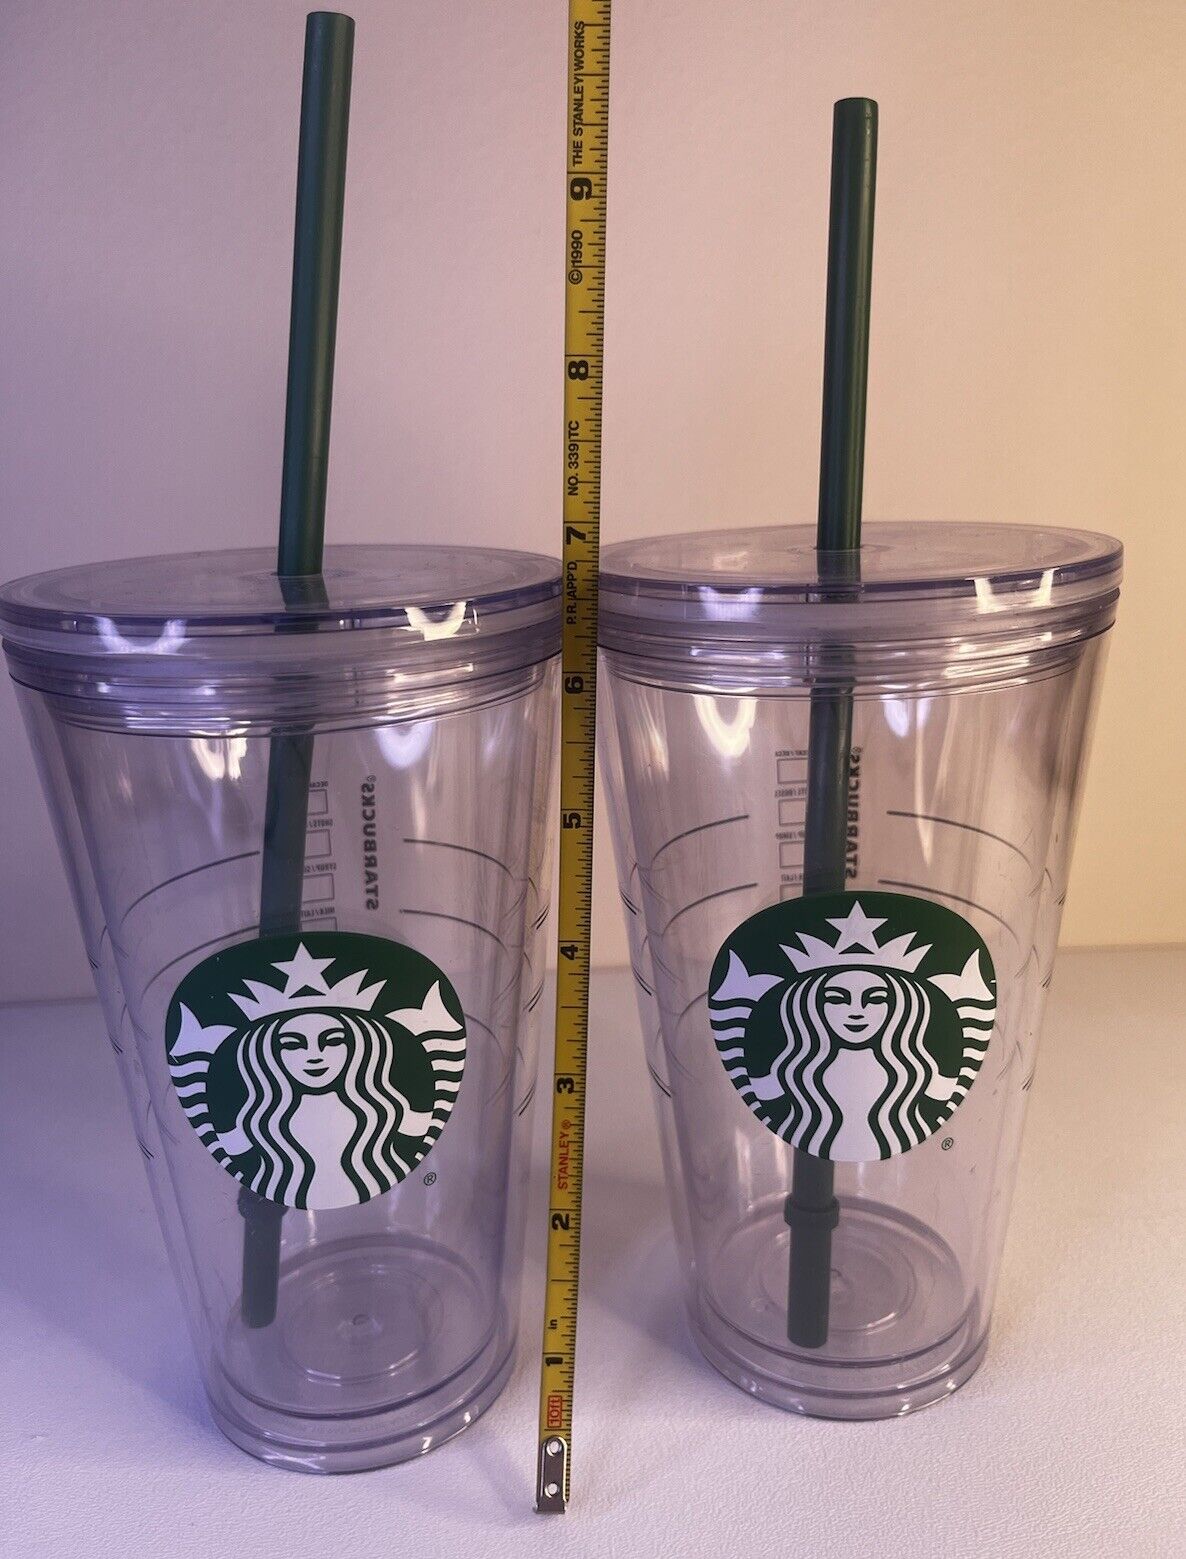 2 Starbucks Clear 16oz Plastic Tumblers w/ Lids & Green Straws